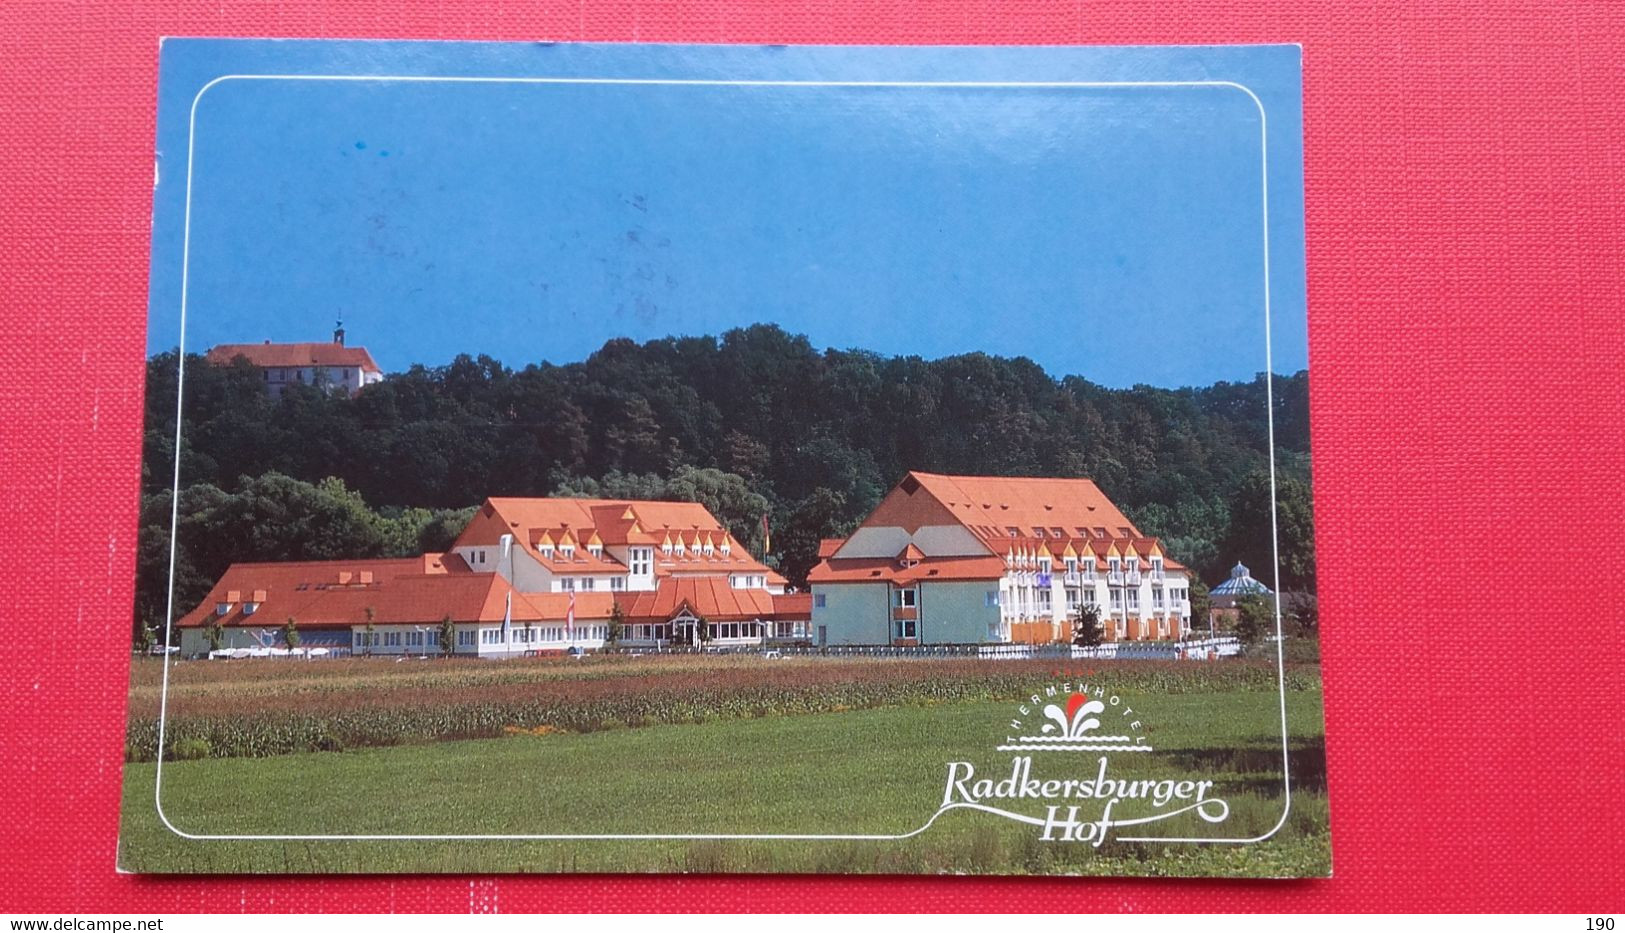 Bad Radkersburg.RADKERSBURGER HOF - Bad Radkersburg